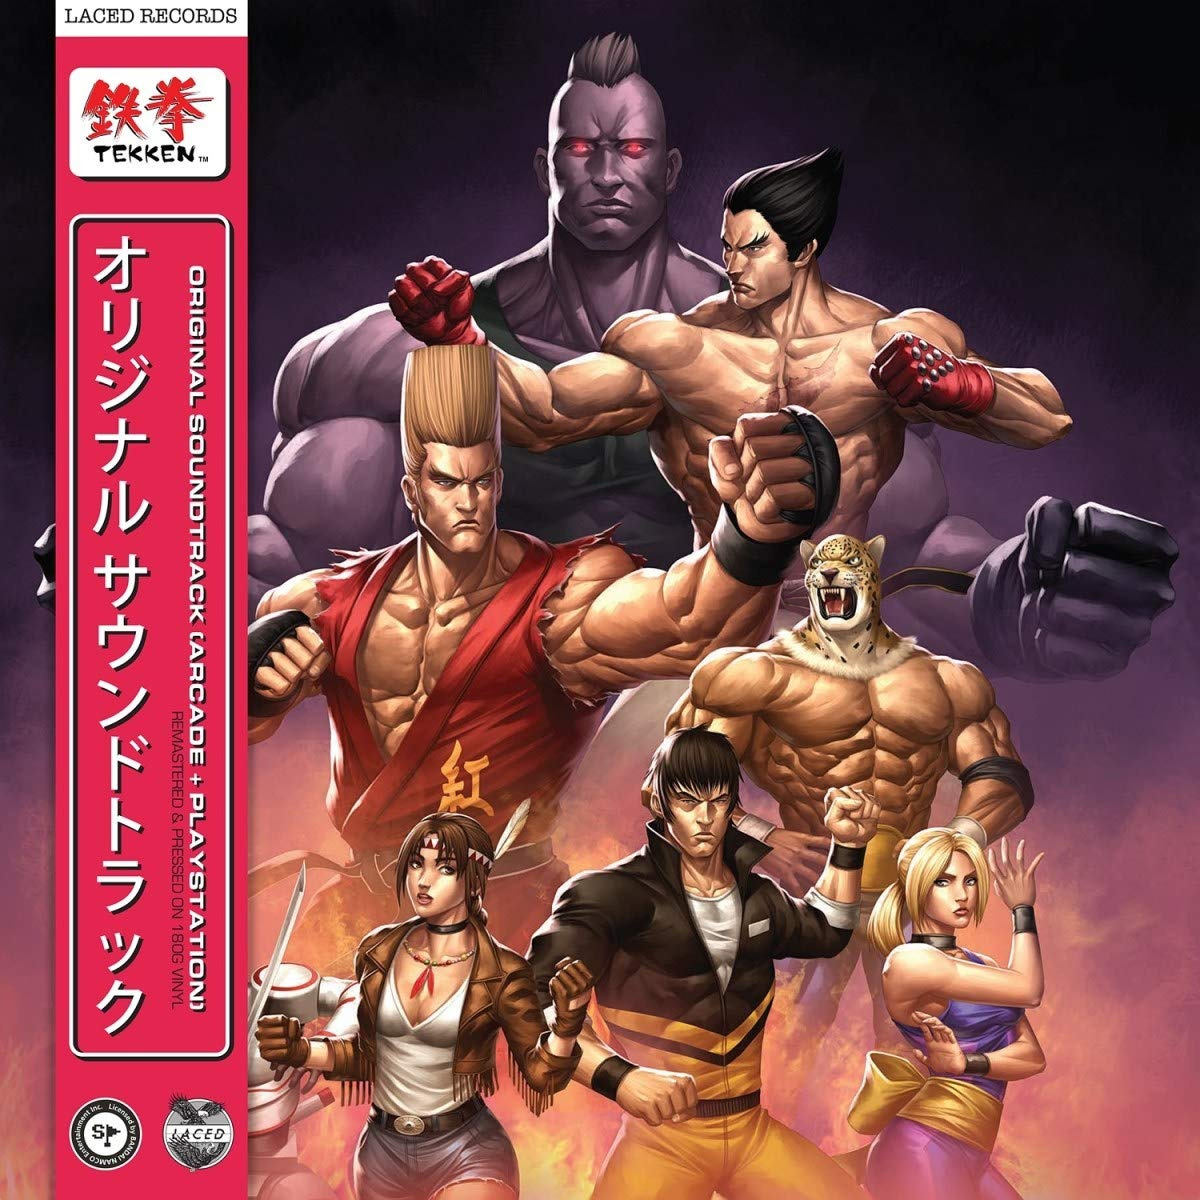 Oficiální soundtrack Tekken na LP